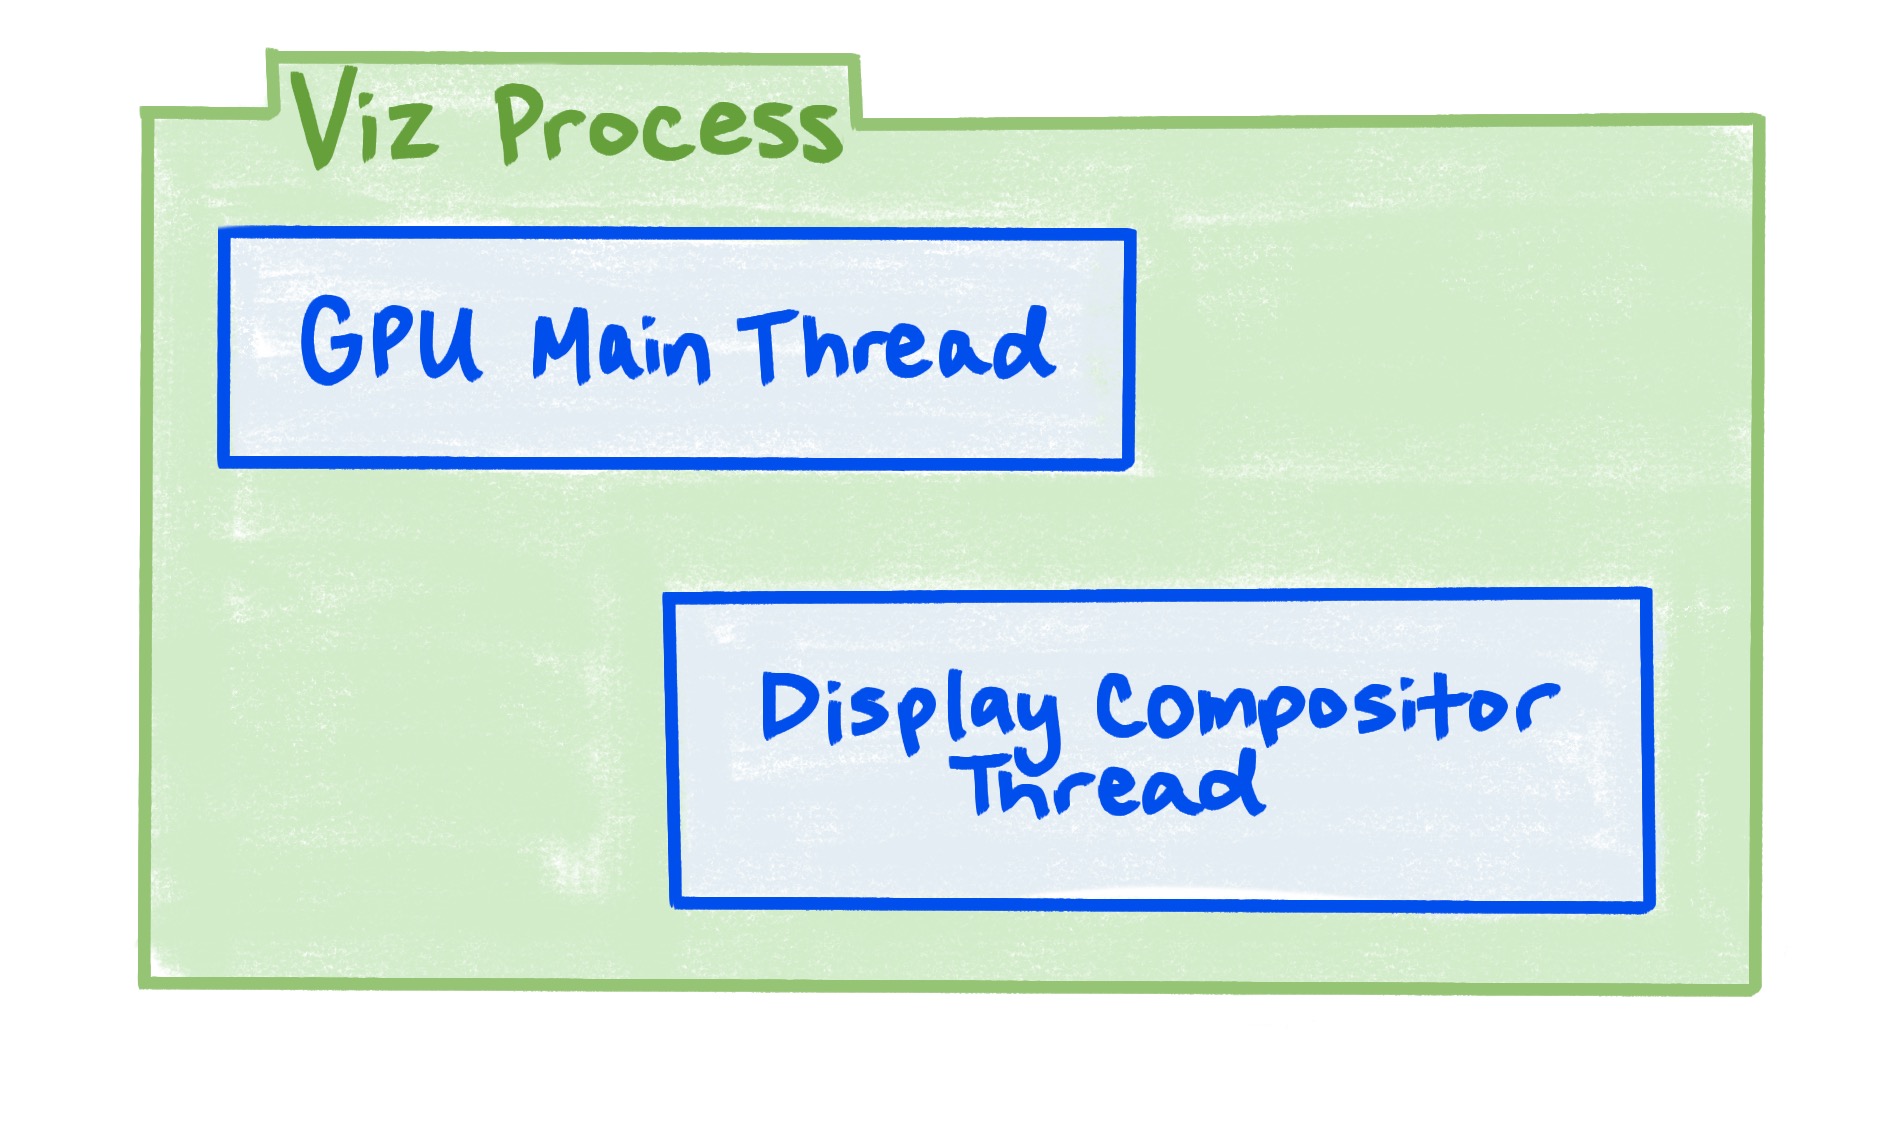 فرآیند Viz شامل رشته اصلی GPU و رشته ترکیب کننده نمایشگر است.